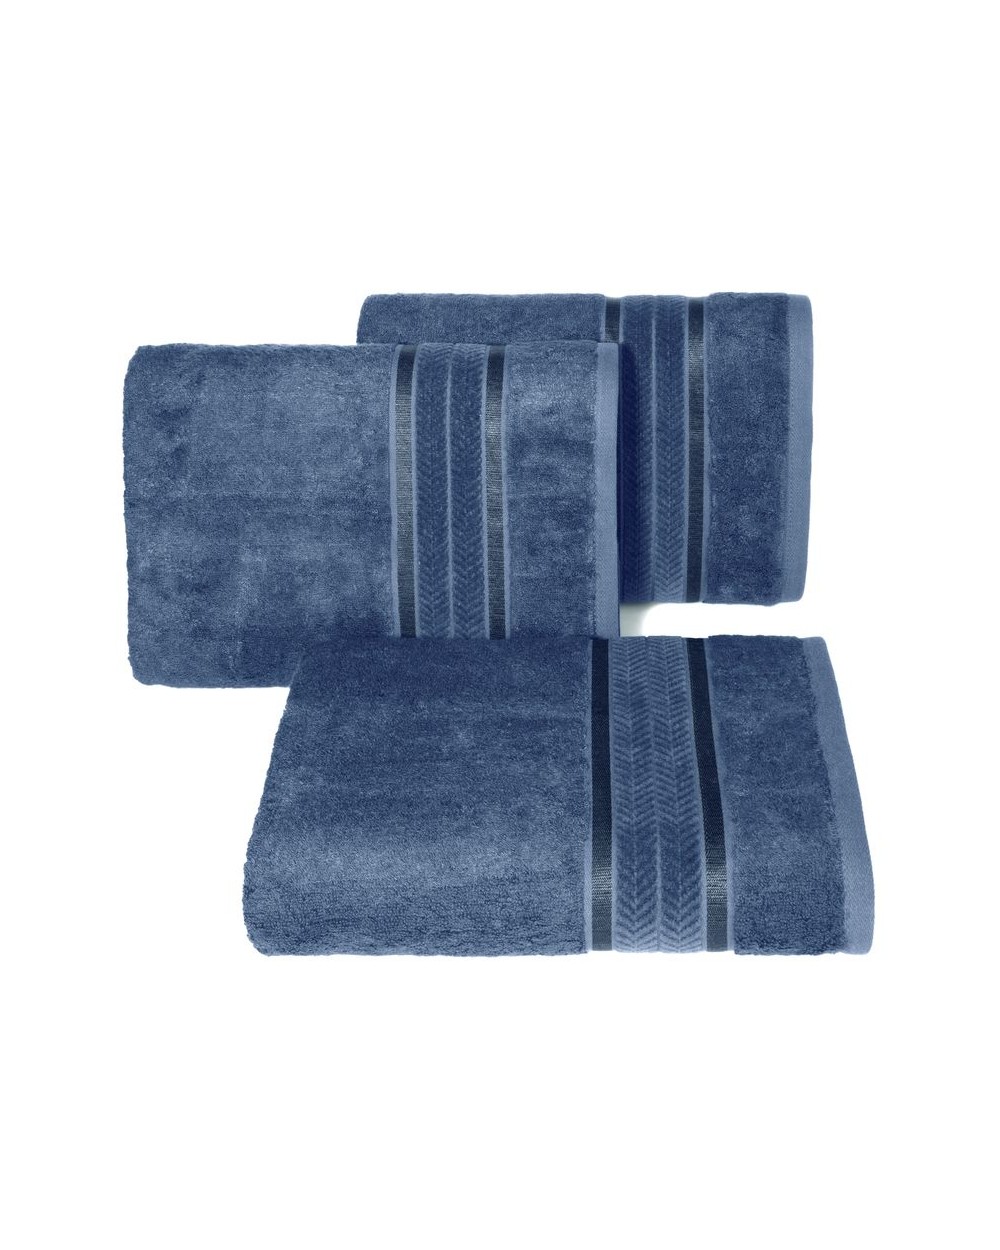 Ręcznik bambus 50x90 Miro niebieski